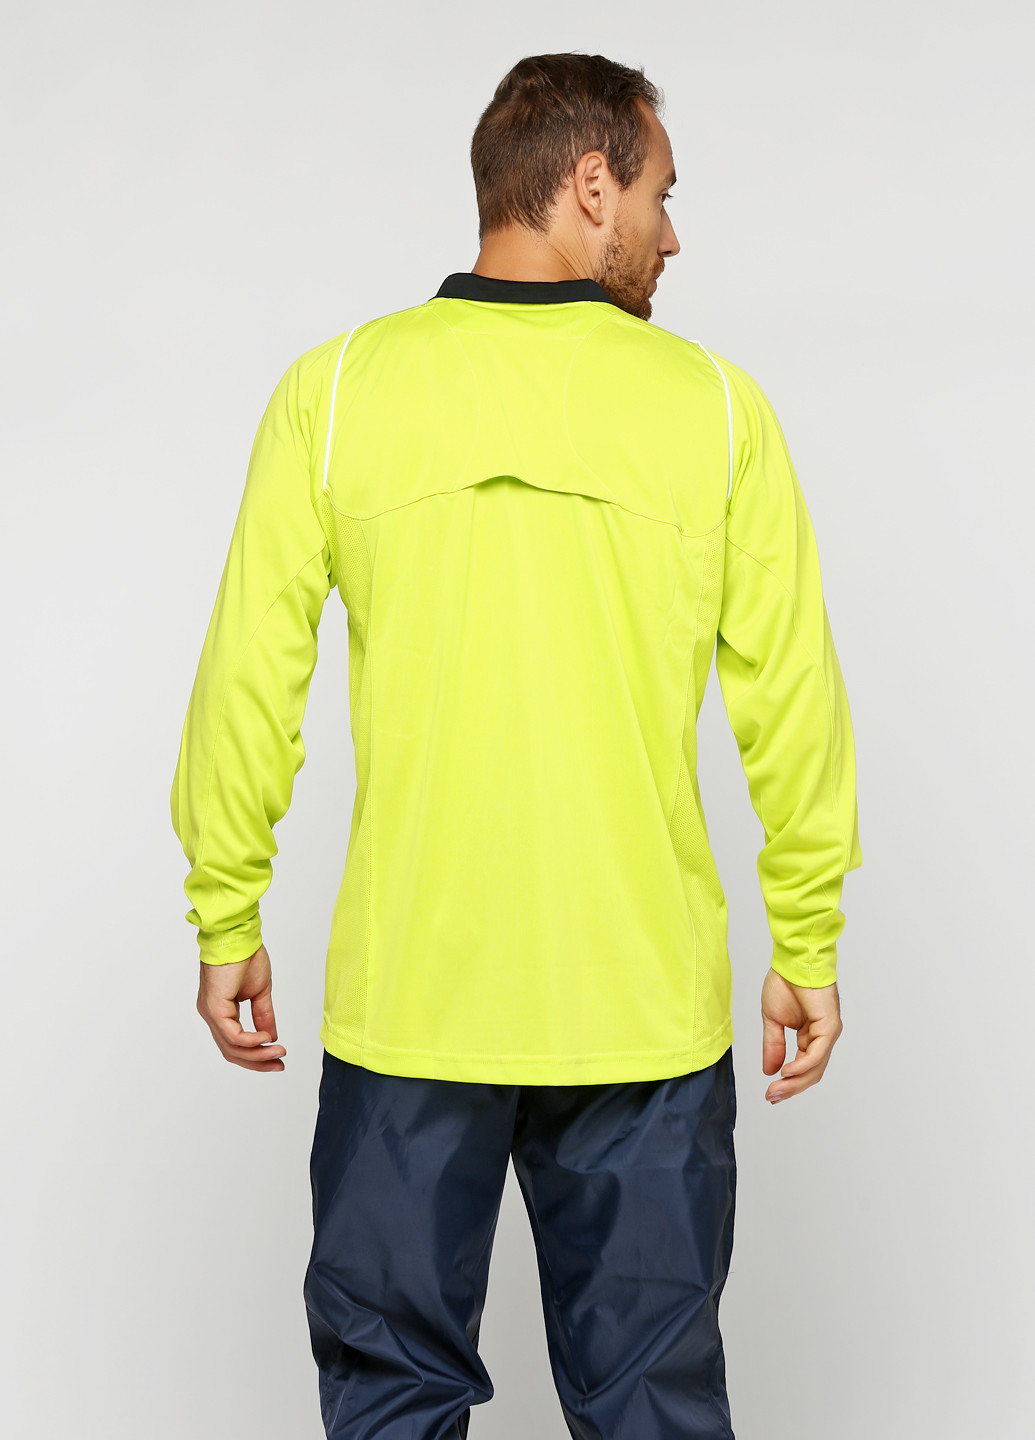 Лимонно-зеленая футболка-поло для мужчин Umbro с логотипом